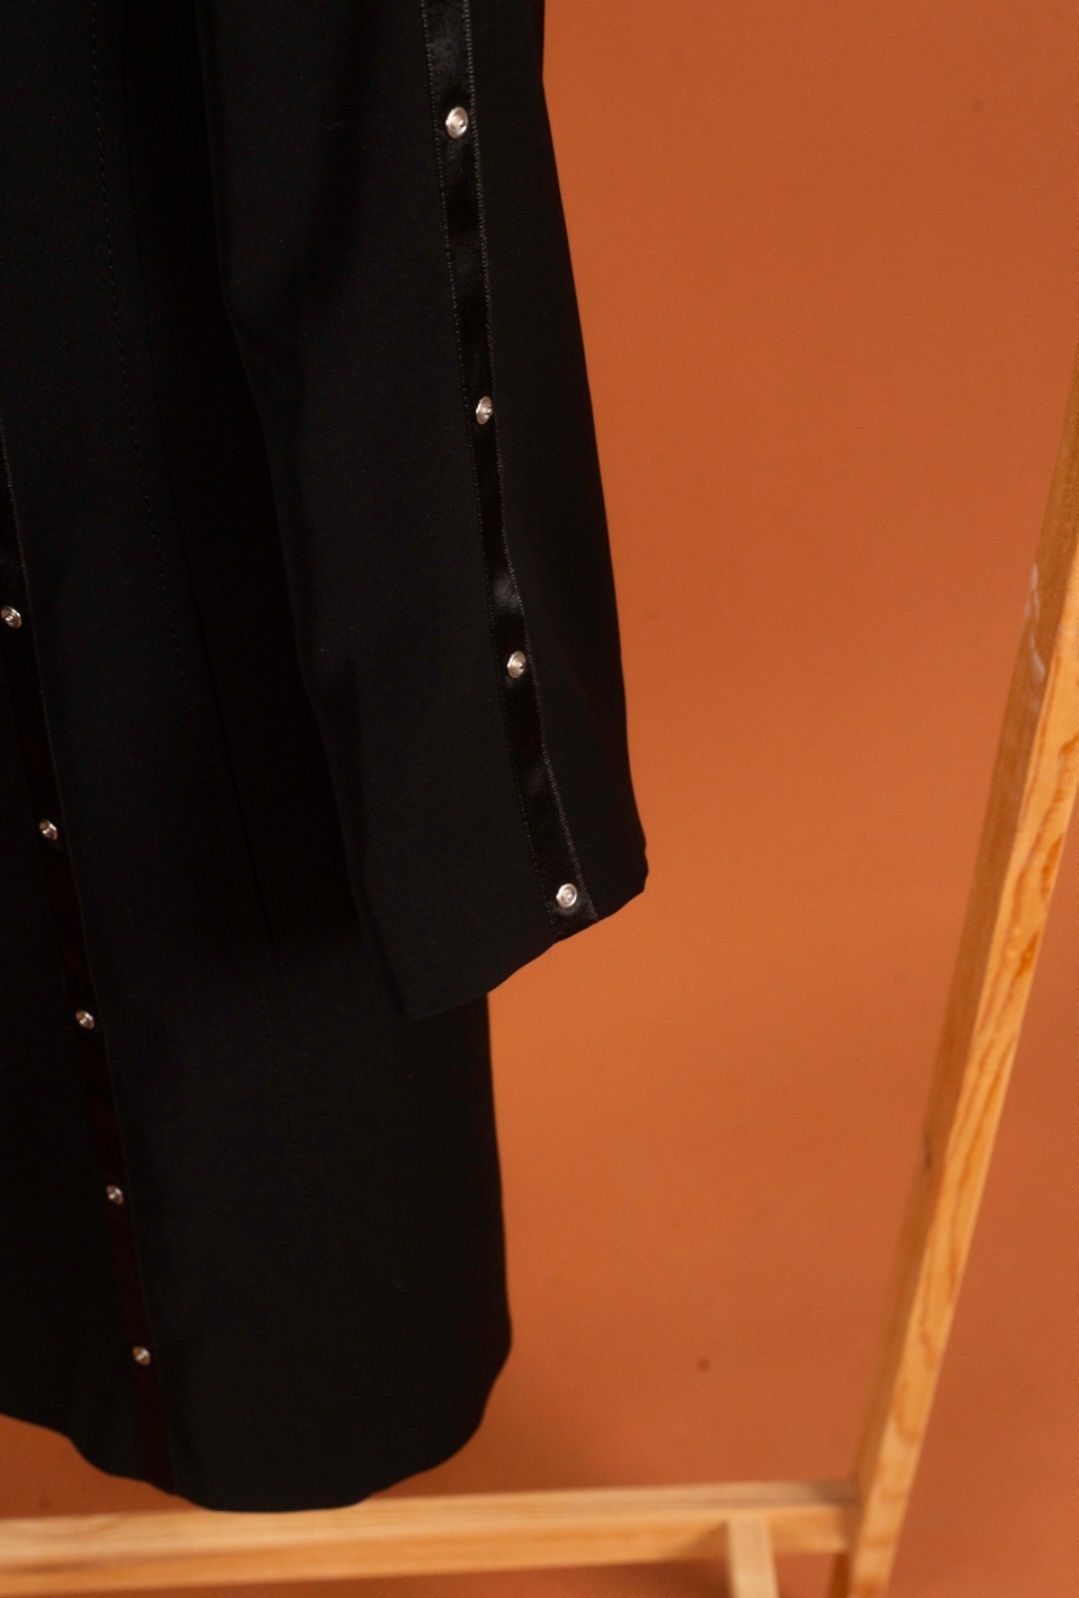 Пиджак женский (удлиненный).Черного цвета.  Размер рус 52 (европ 46)